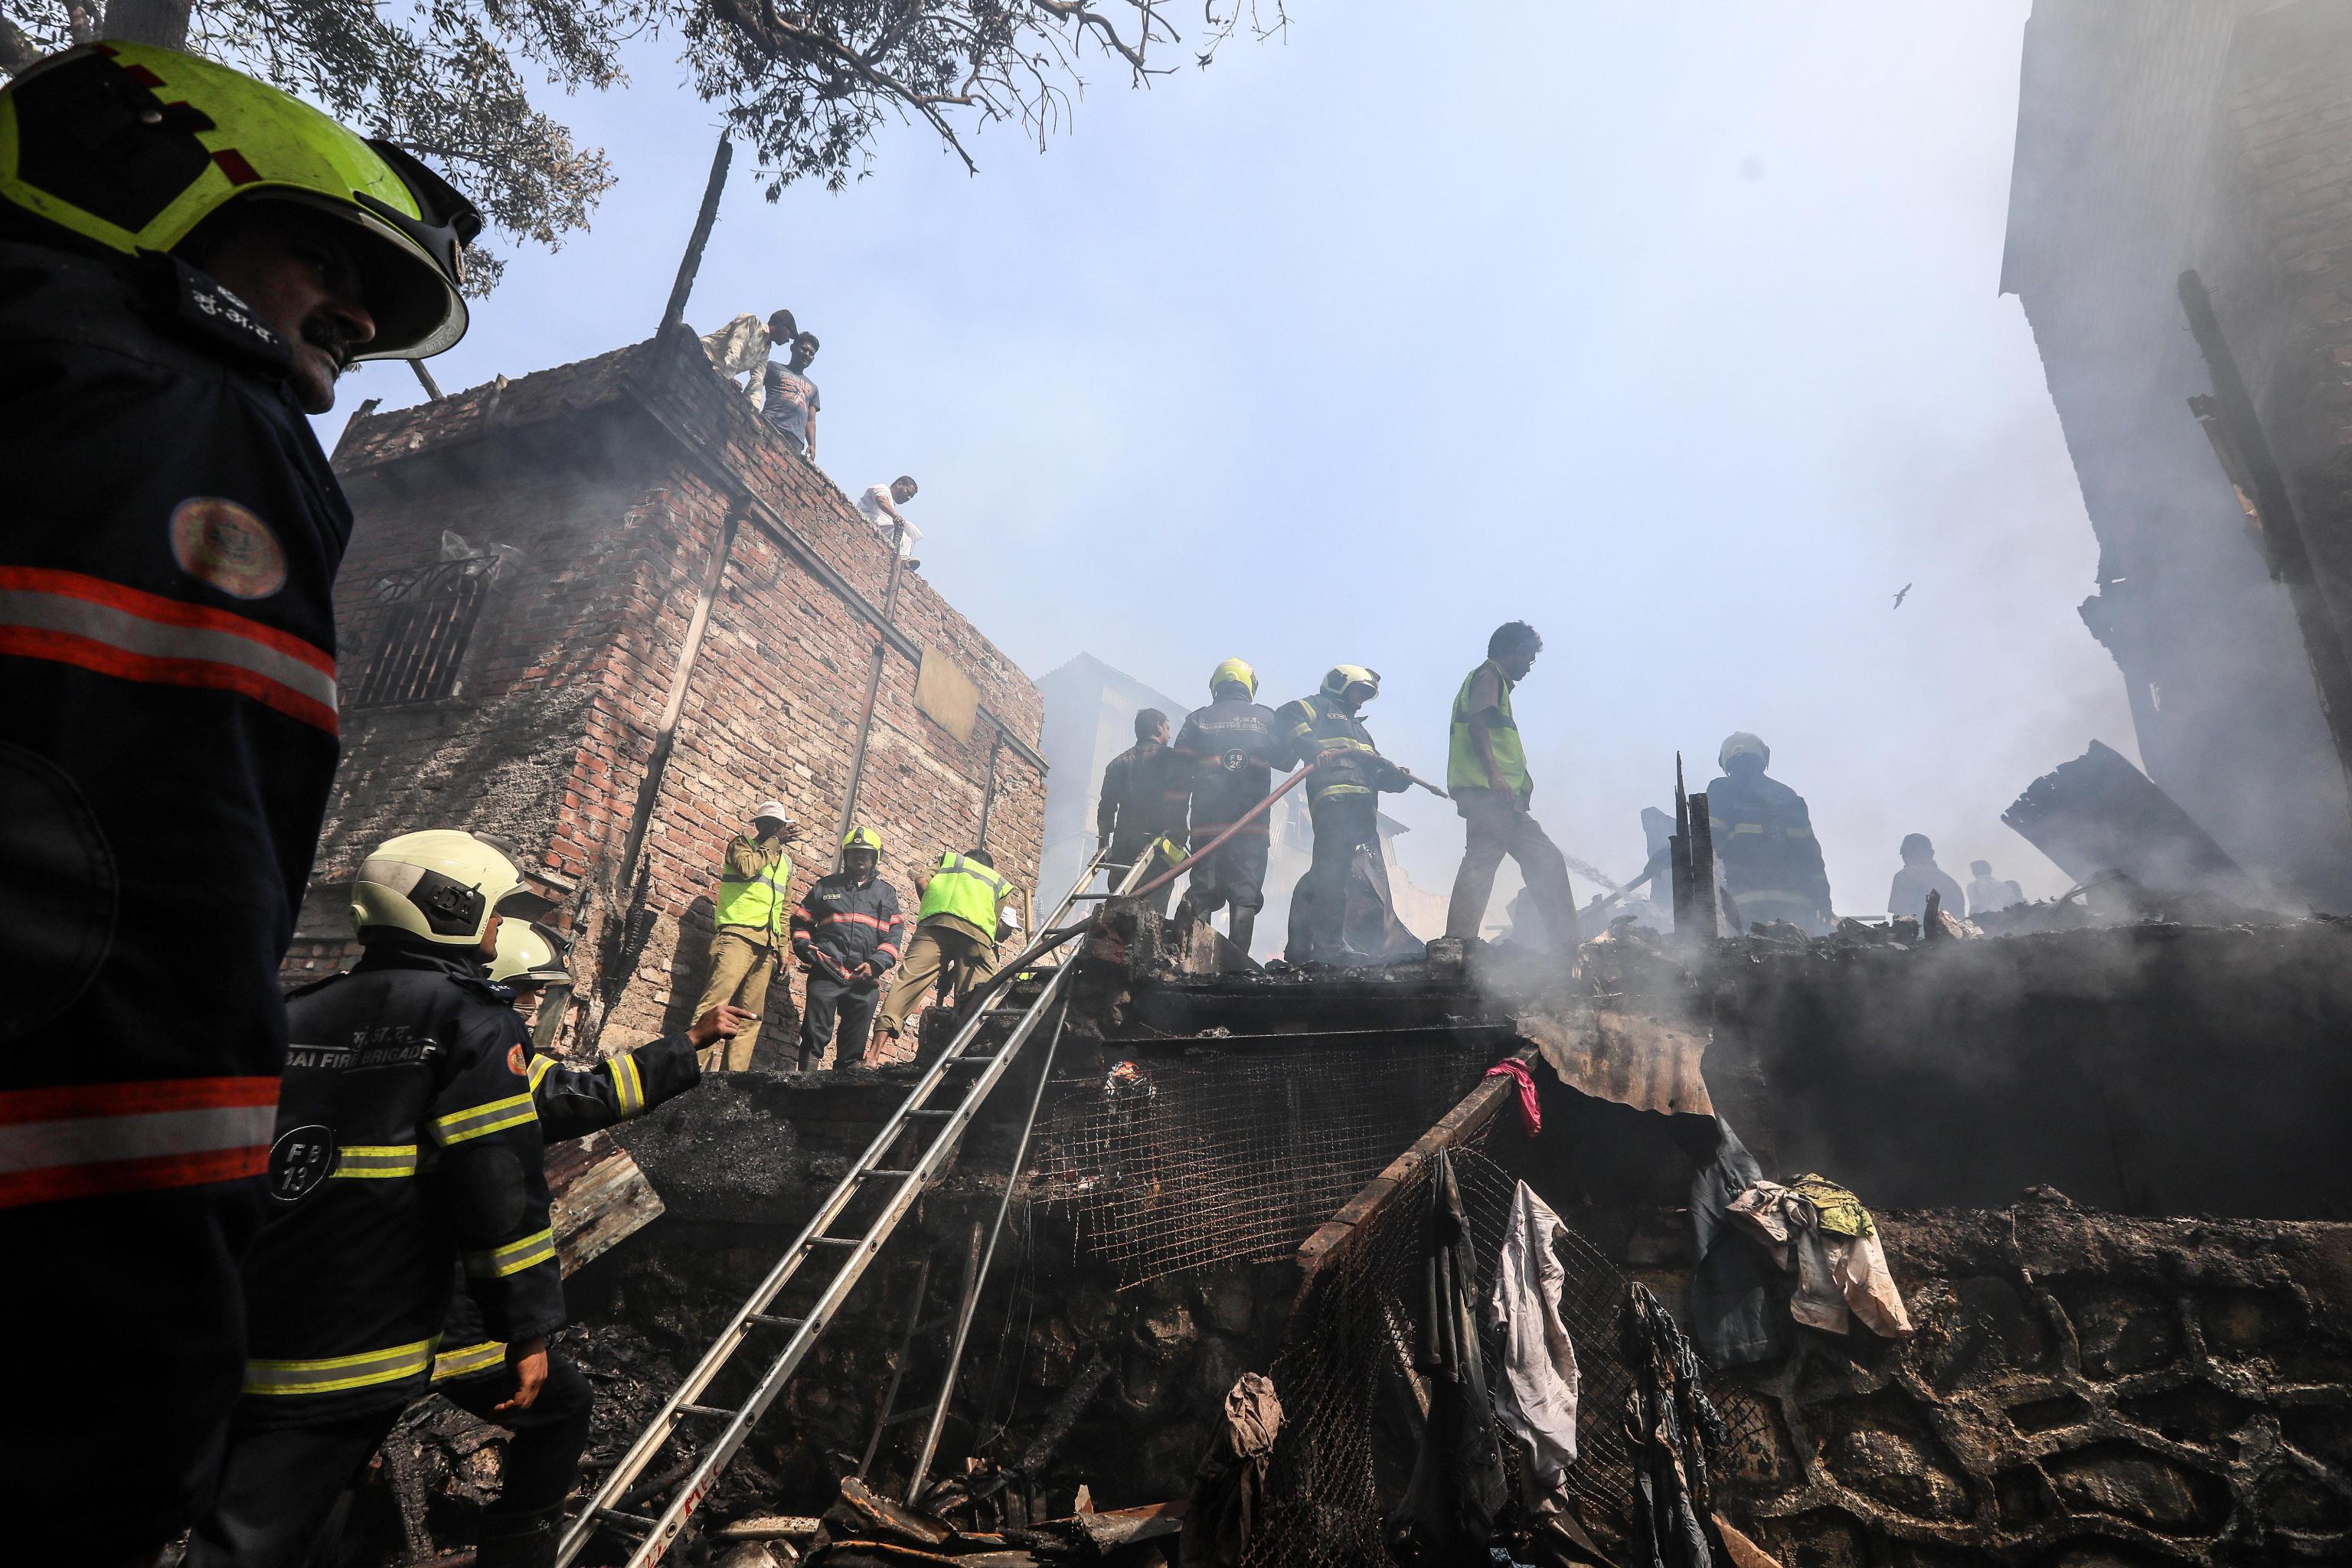 Le operazioni dei pompieri indiani per spegnere le fiamme che hanno distrutto circa 20 baraccopoli a Mumbai. Non è ancora chiara la causa dell'incendio